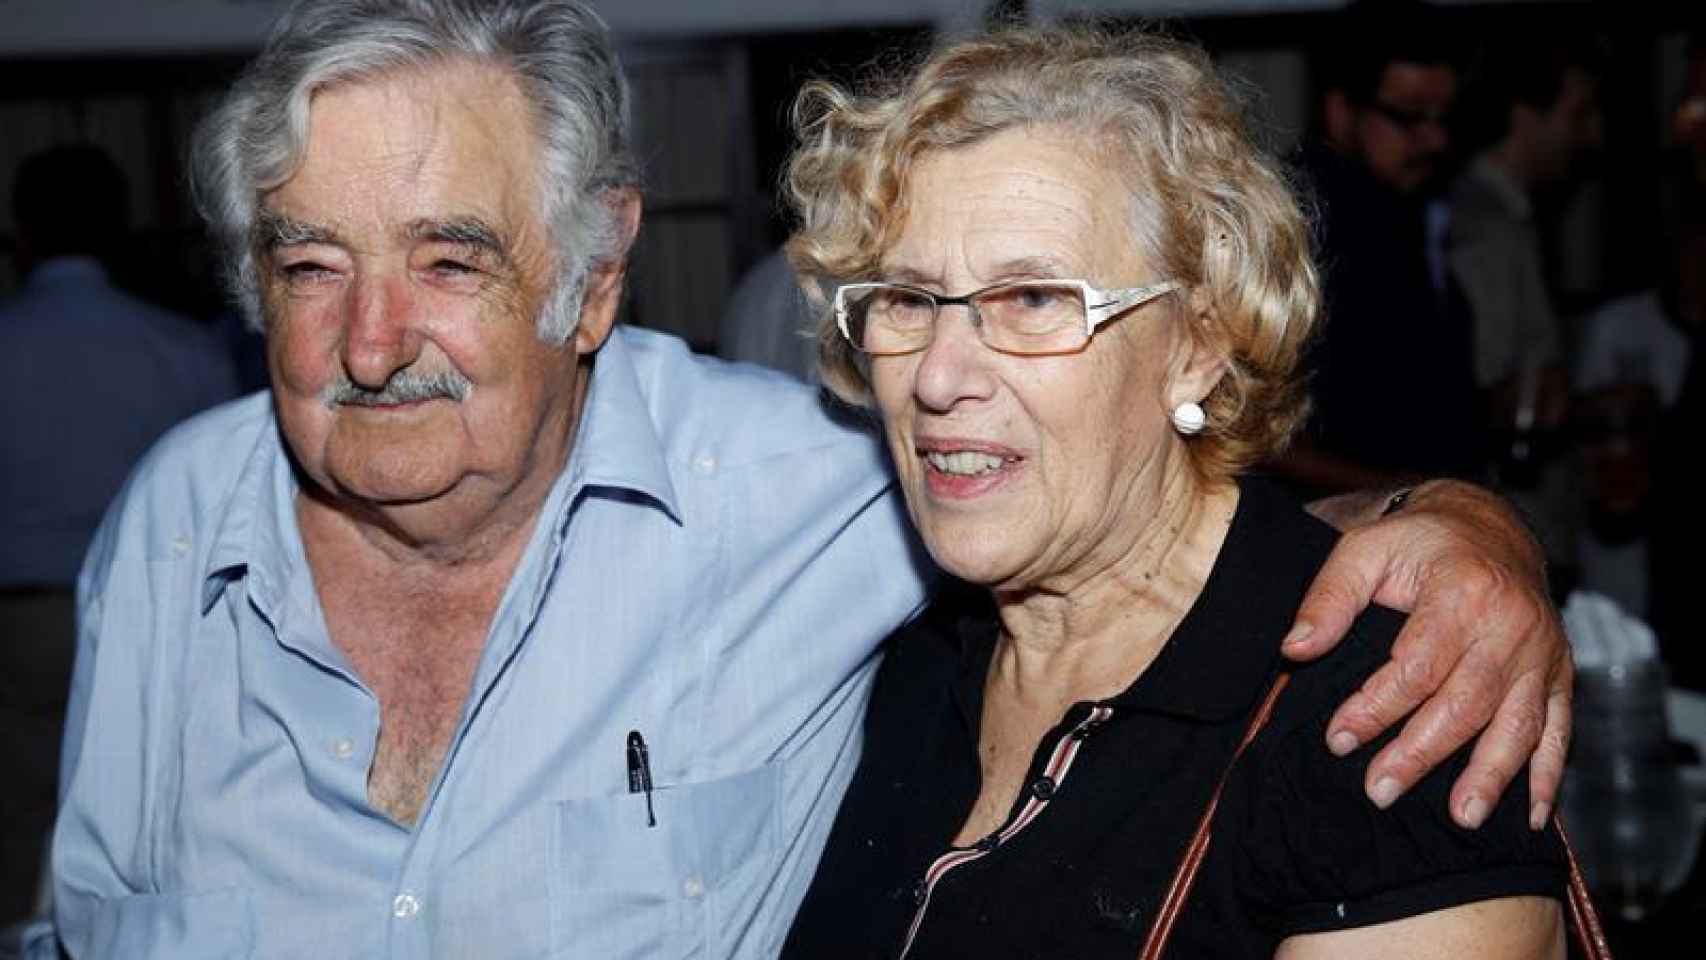 El expresidente uruguayo José Mujica (i) posa junto a la alcaldesa de Madrid, Manuela Carmena (d), en una recepción en honor a la jefa del consistorio.